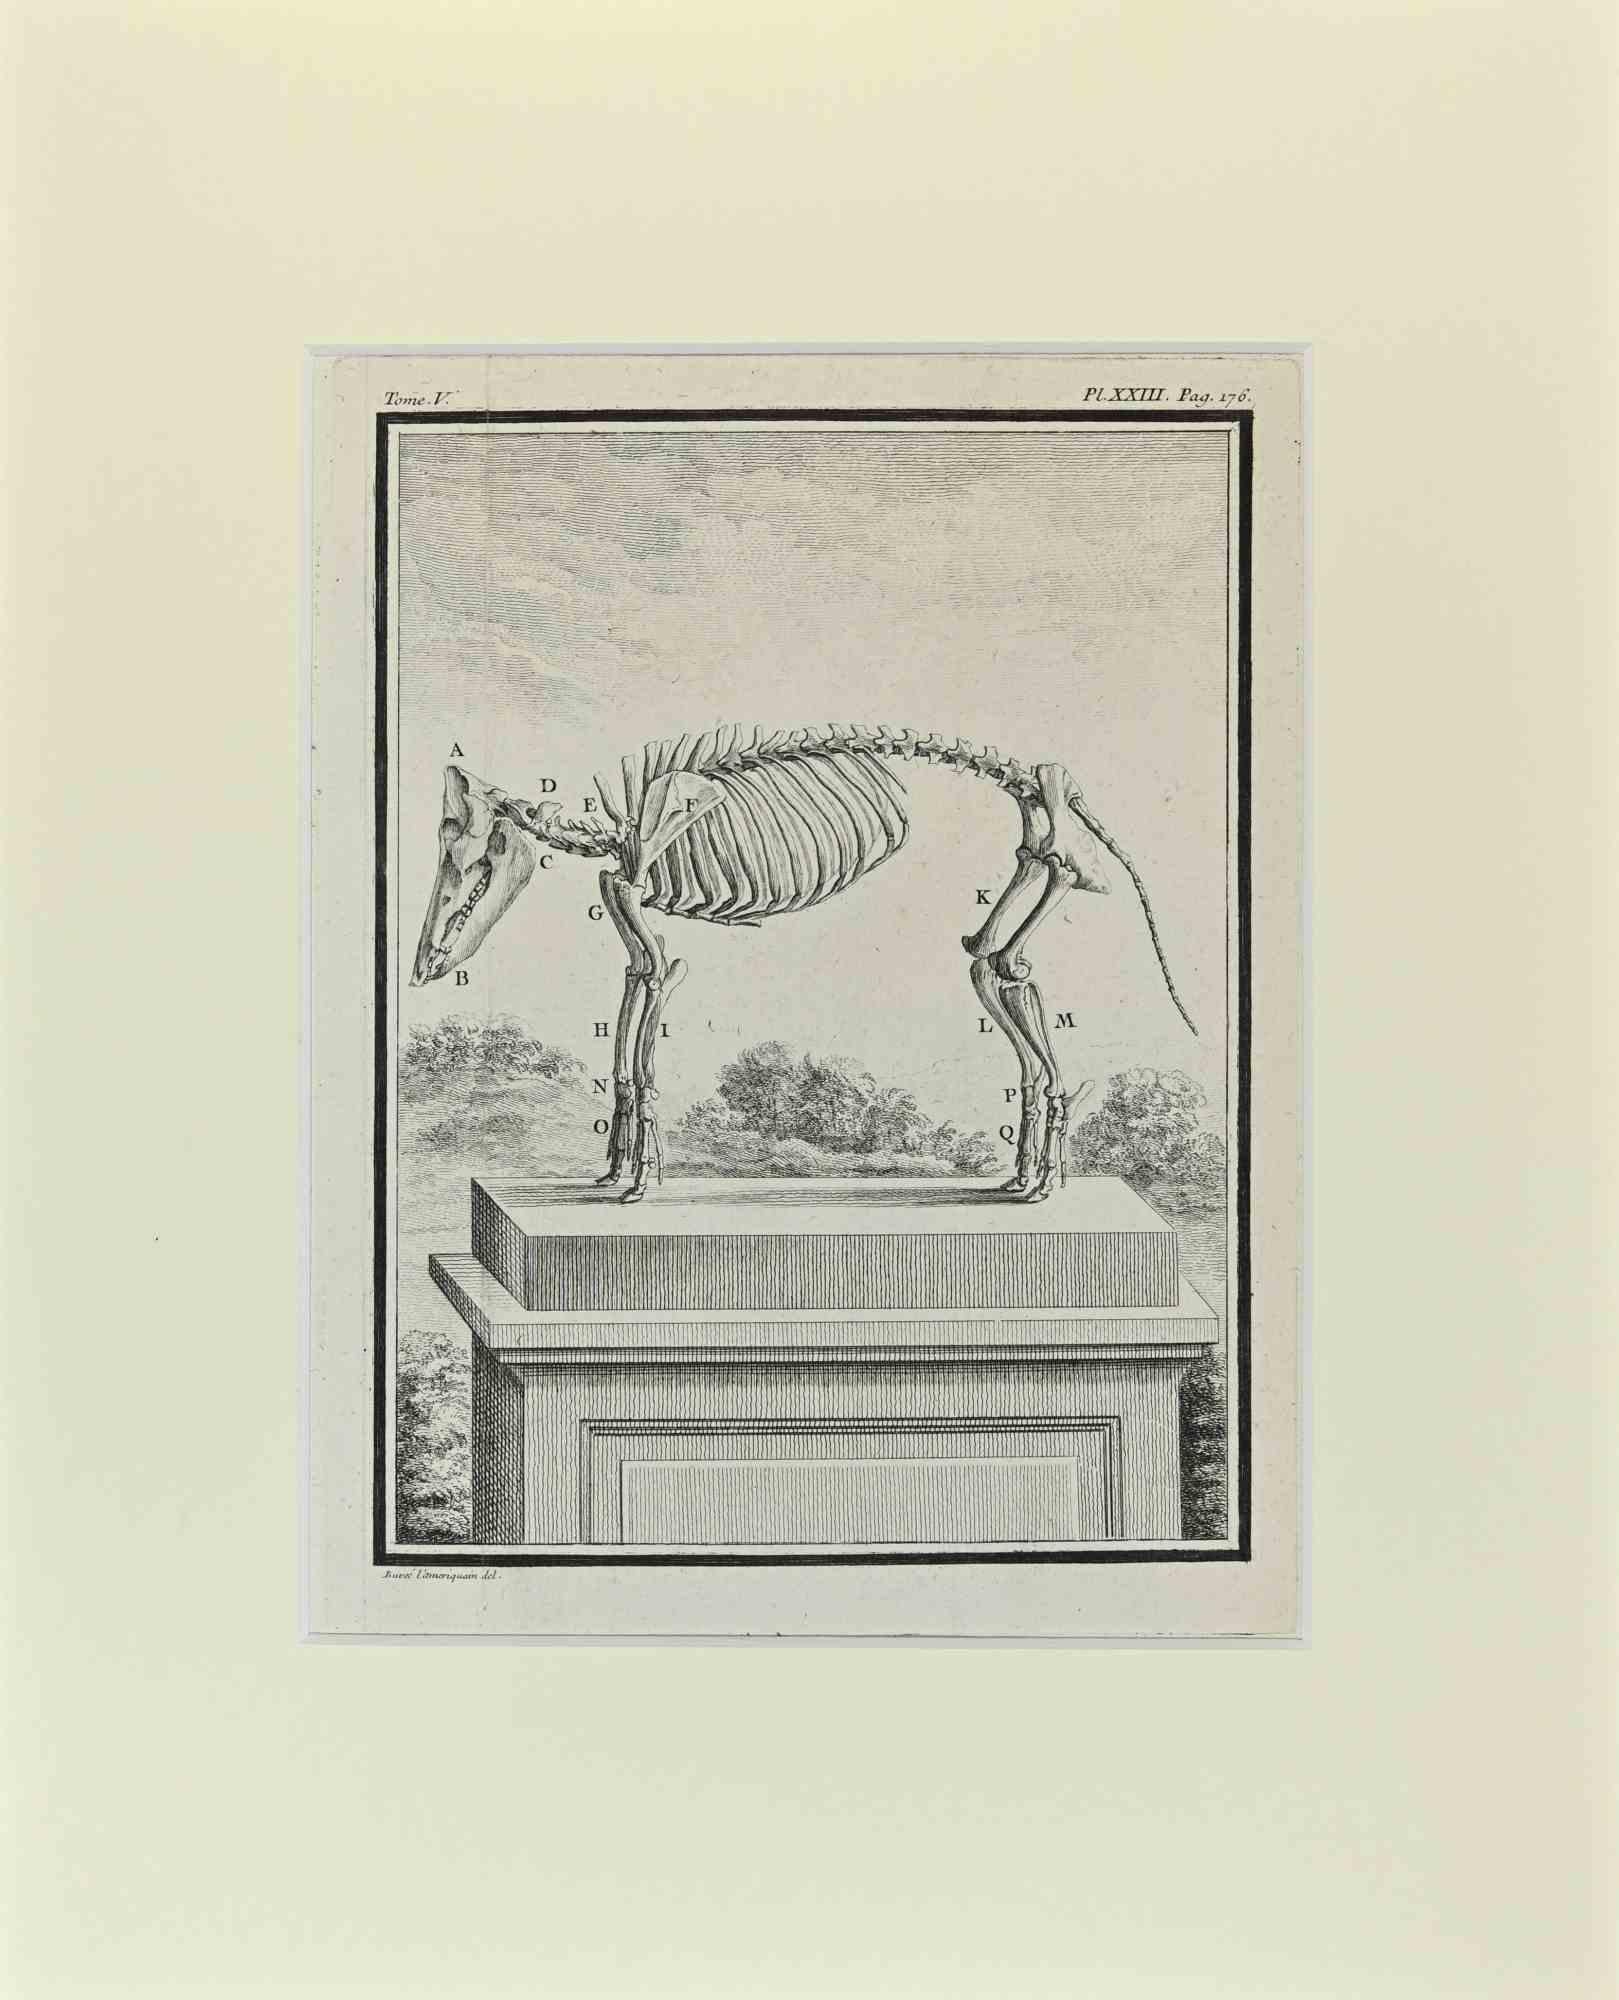 Animal Skeleton est une œuvre d'art réalisée par Buvée l'Américain en 1771.  

Gravure à l'eau-forte B./W. sur papier ivoire. Signé sur la plaque dans la marge inférieure gauche.

L'œuvre est collée sur du carton. Dimensions totales : 35x28